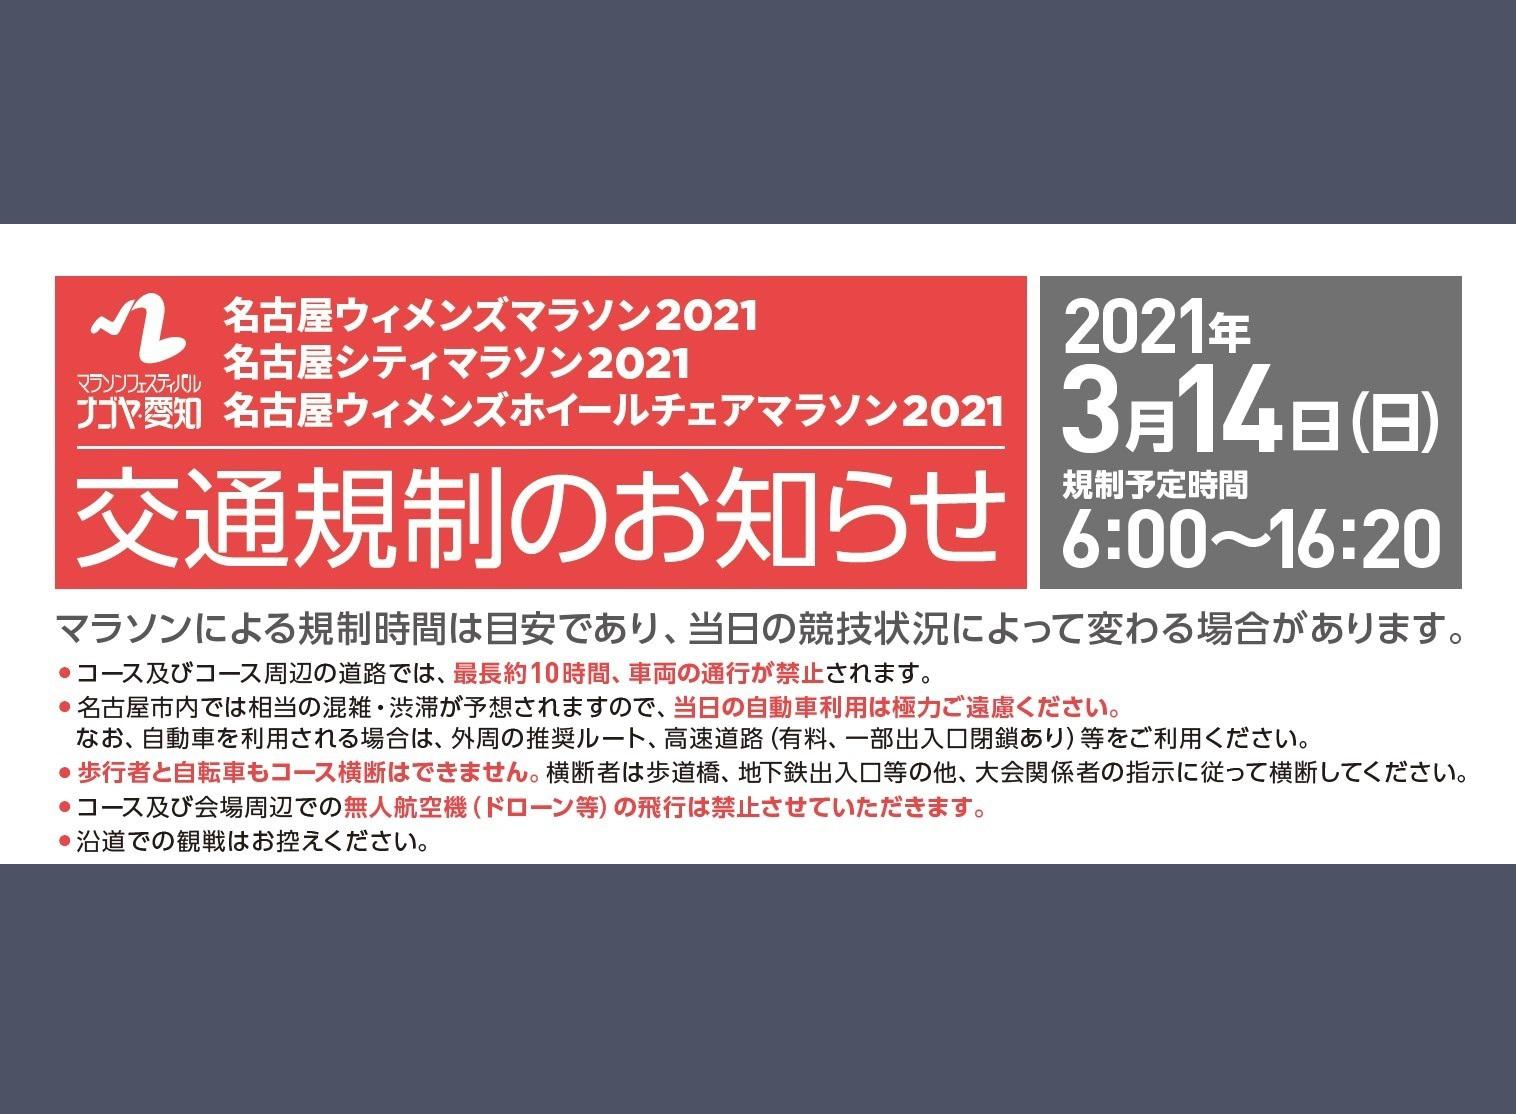 名古屋ウィメンズマラソン開催に伴う交通規制のお知らせ 最新情報 名古屋 徳川美術館